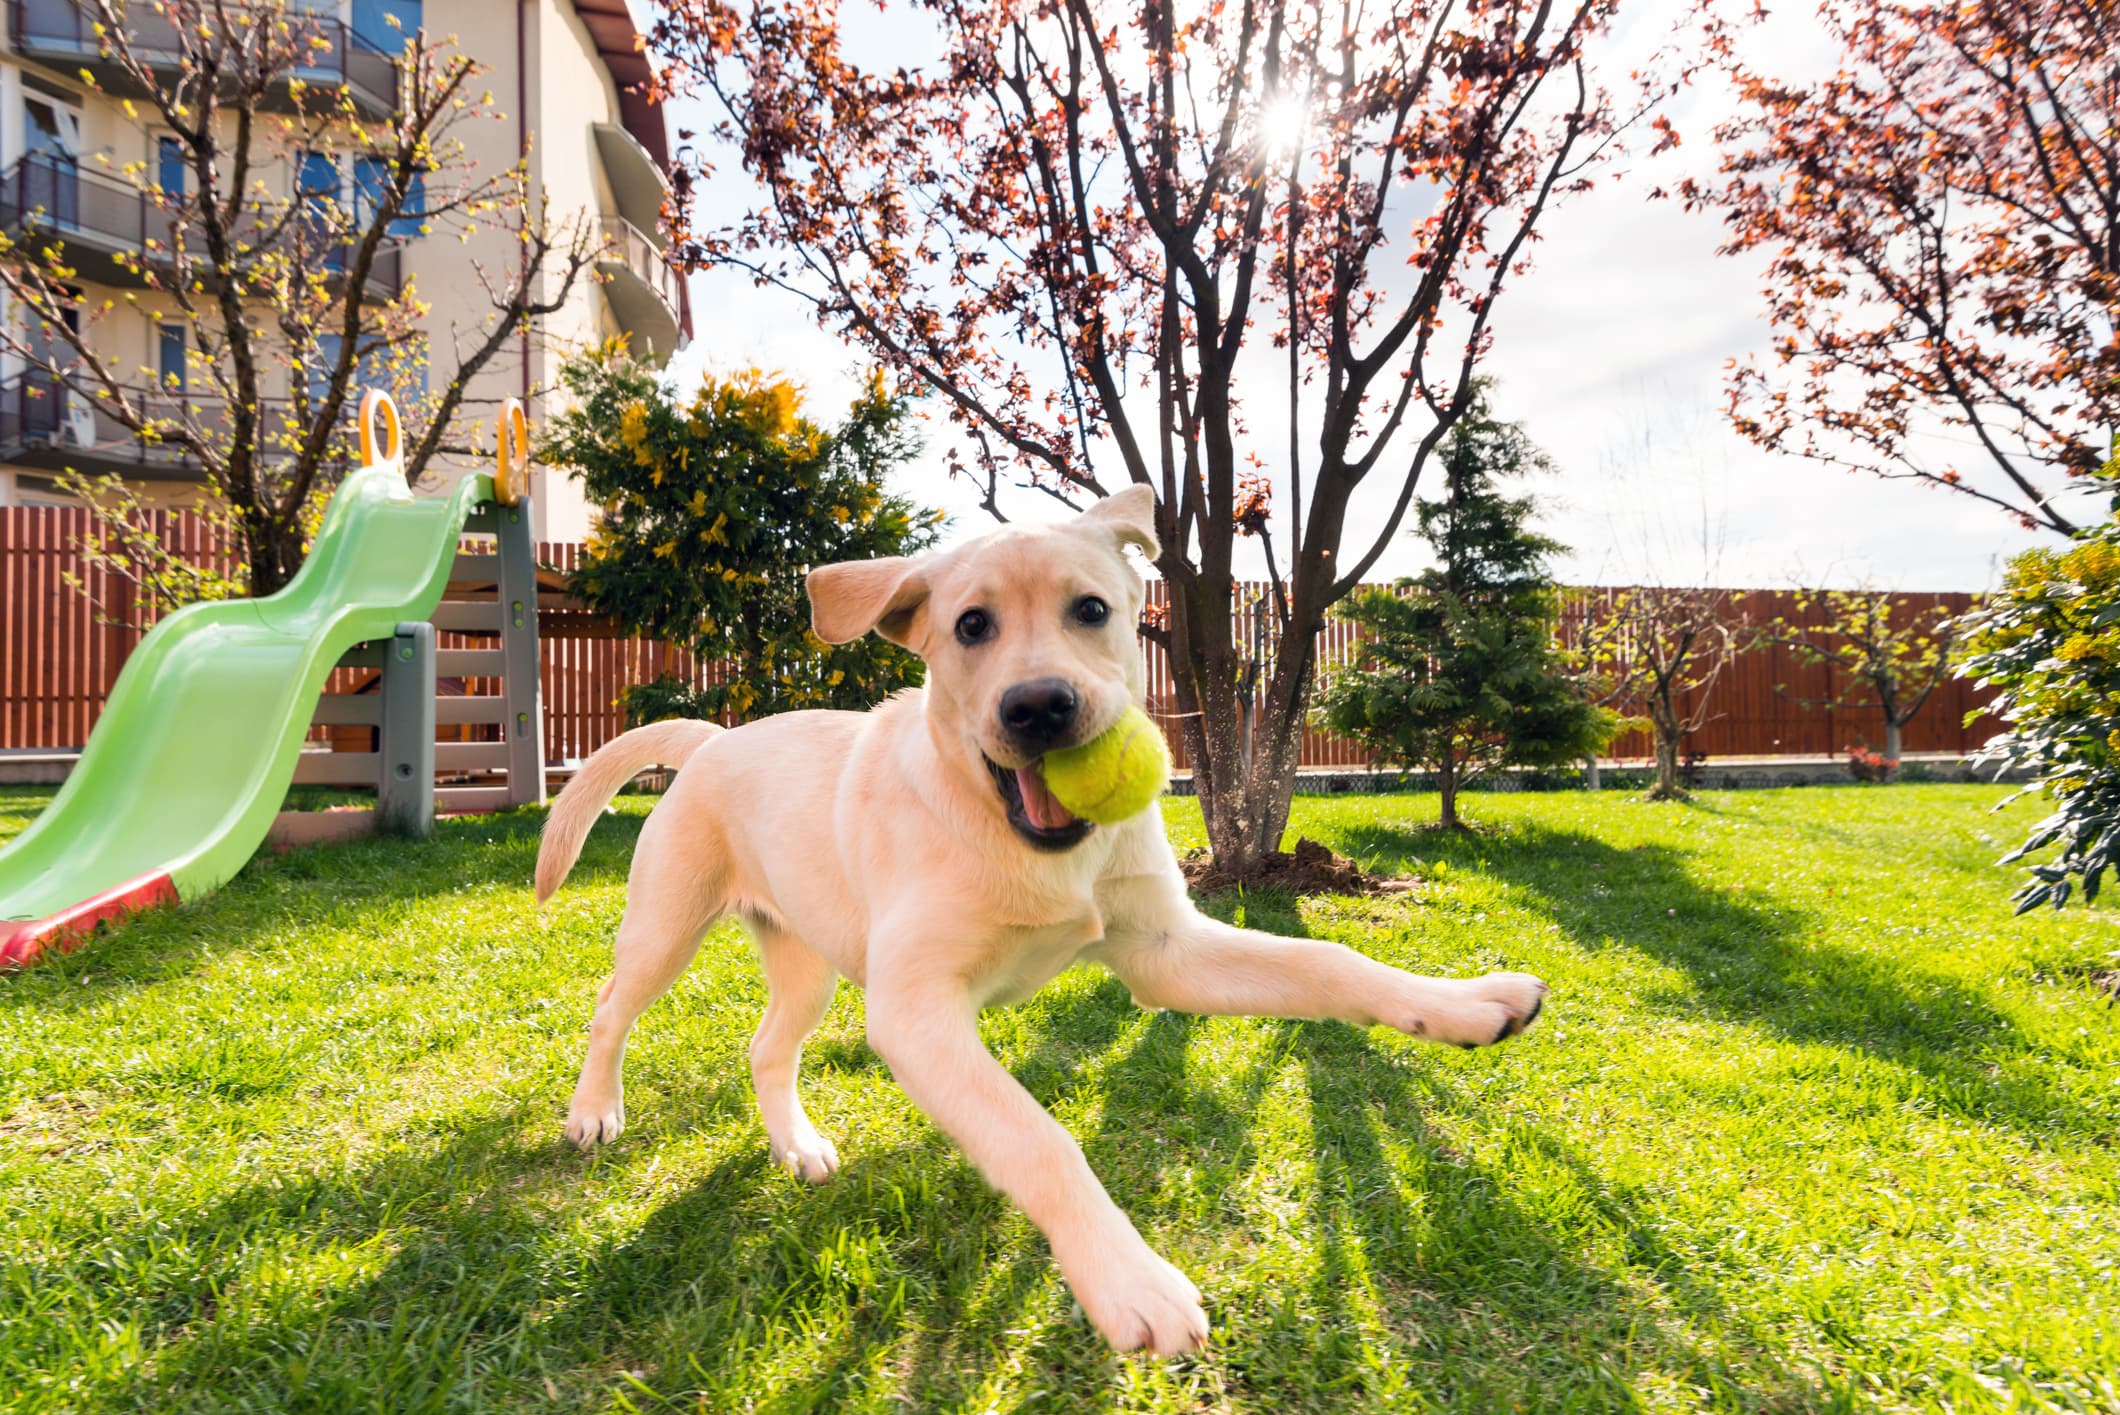 Um cachorro de pelo bege está em um jardim brincando enquanto segura em sua boca um bolinha de tênis verde ao fundo algumas árvores.